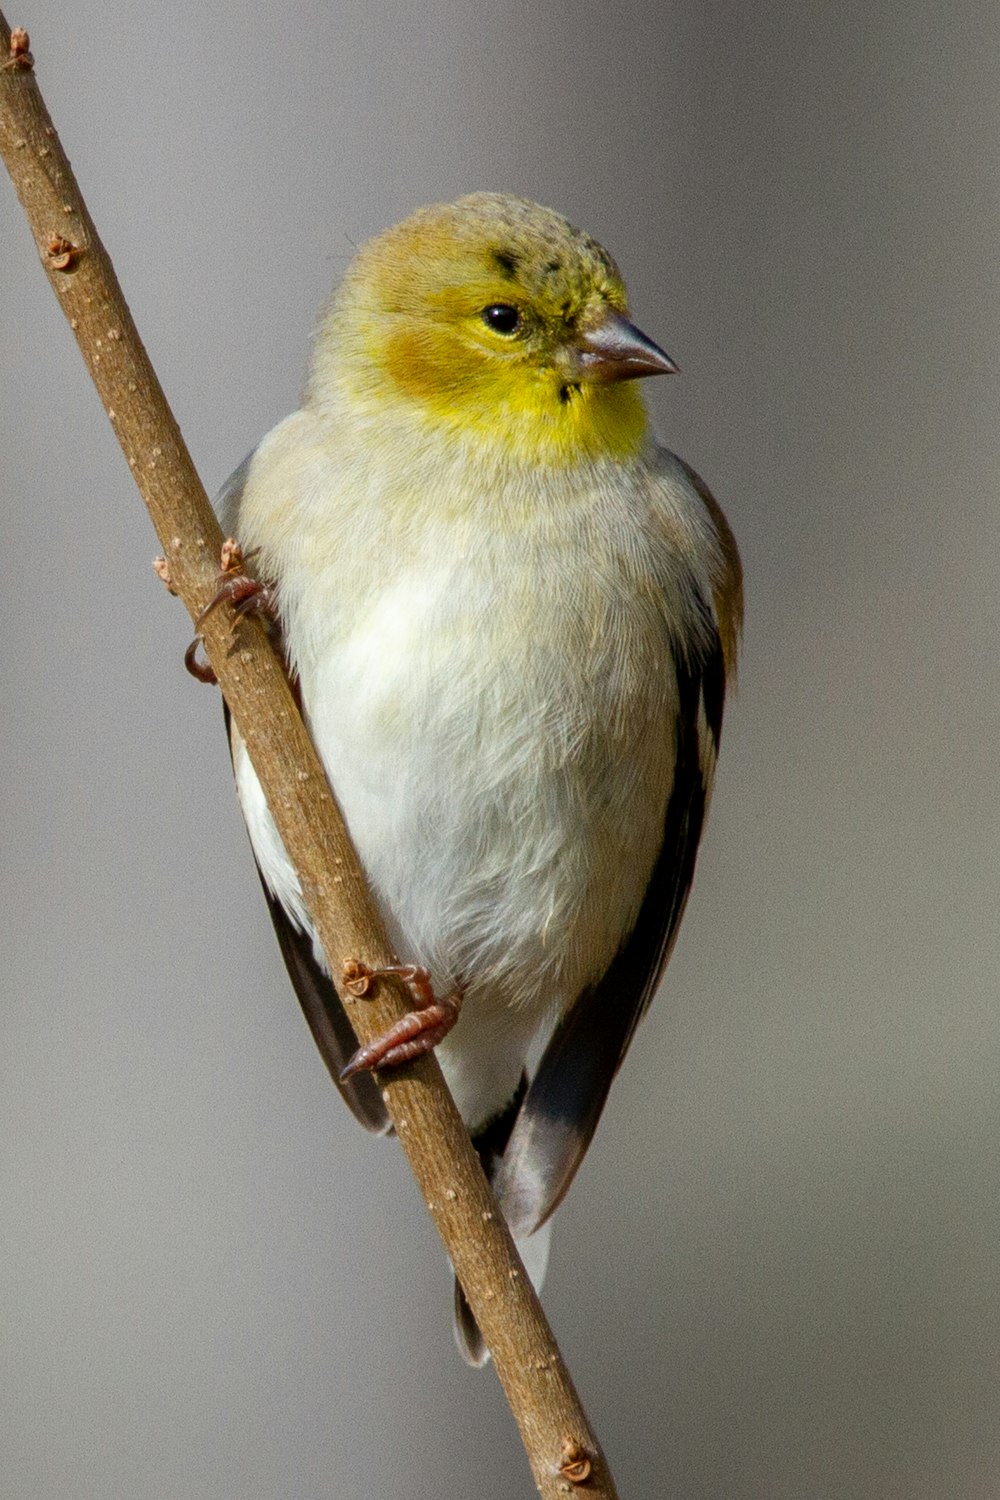 um pequeno pássaro amarelo e branco empoleirado em um galho